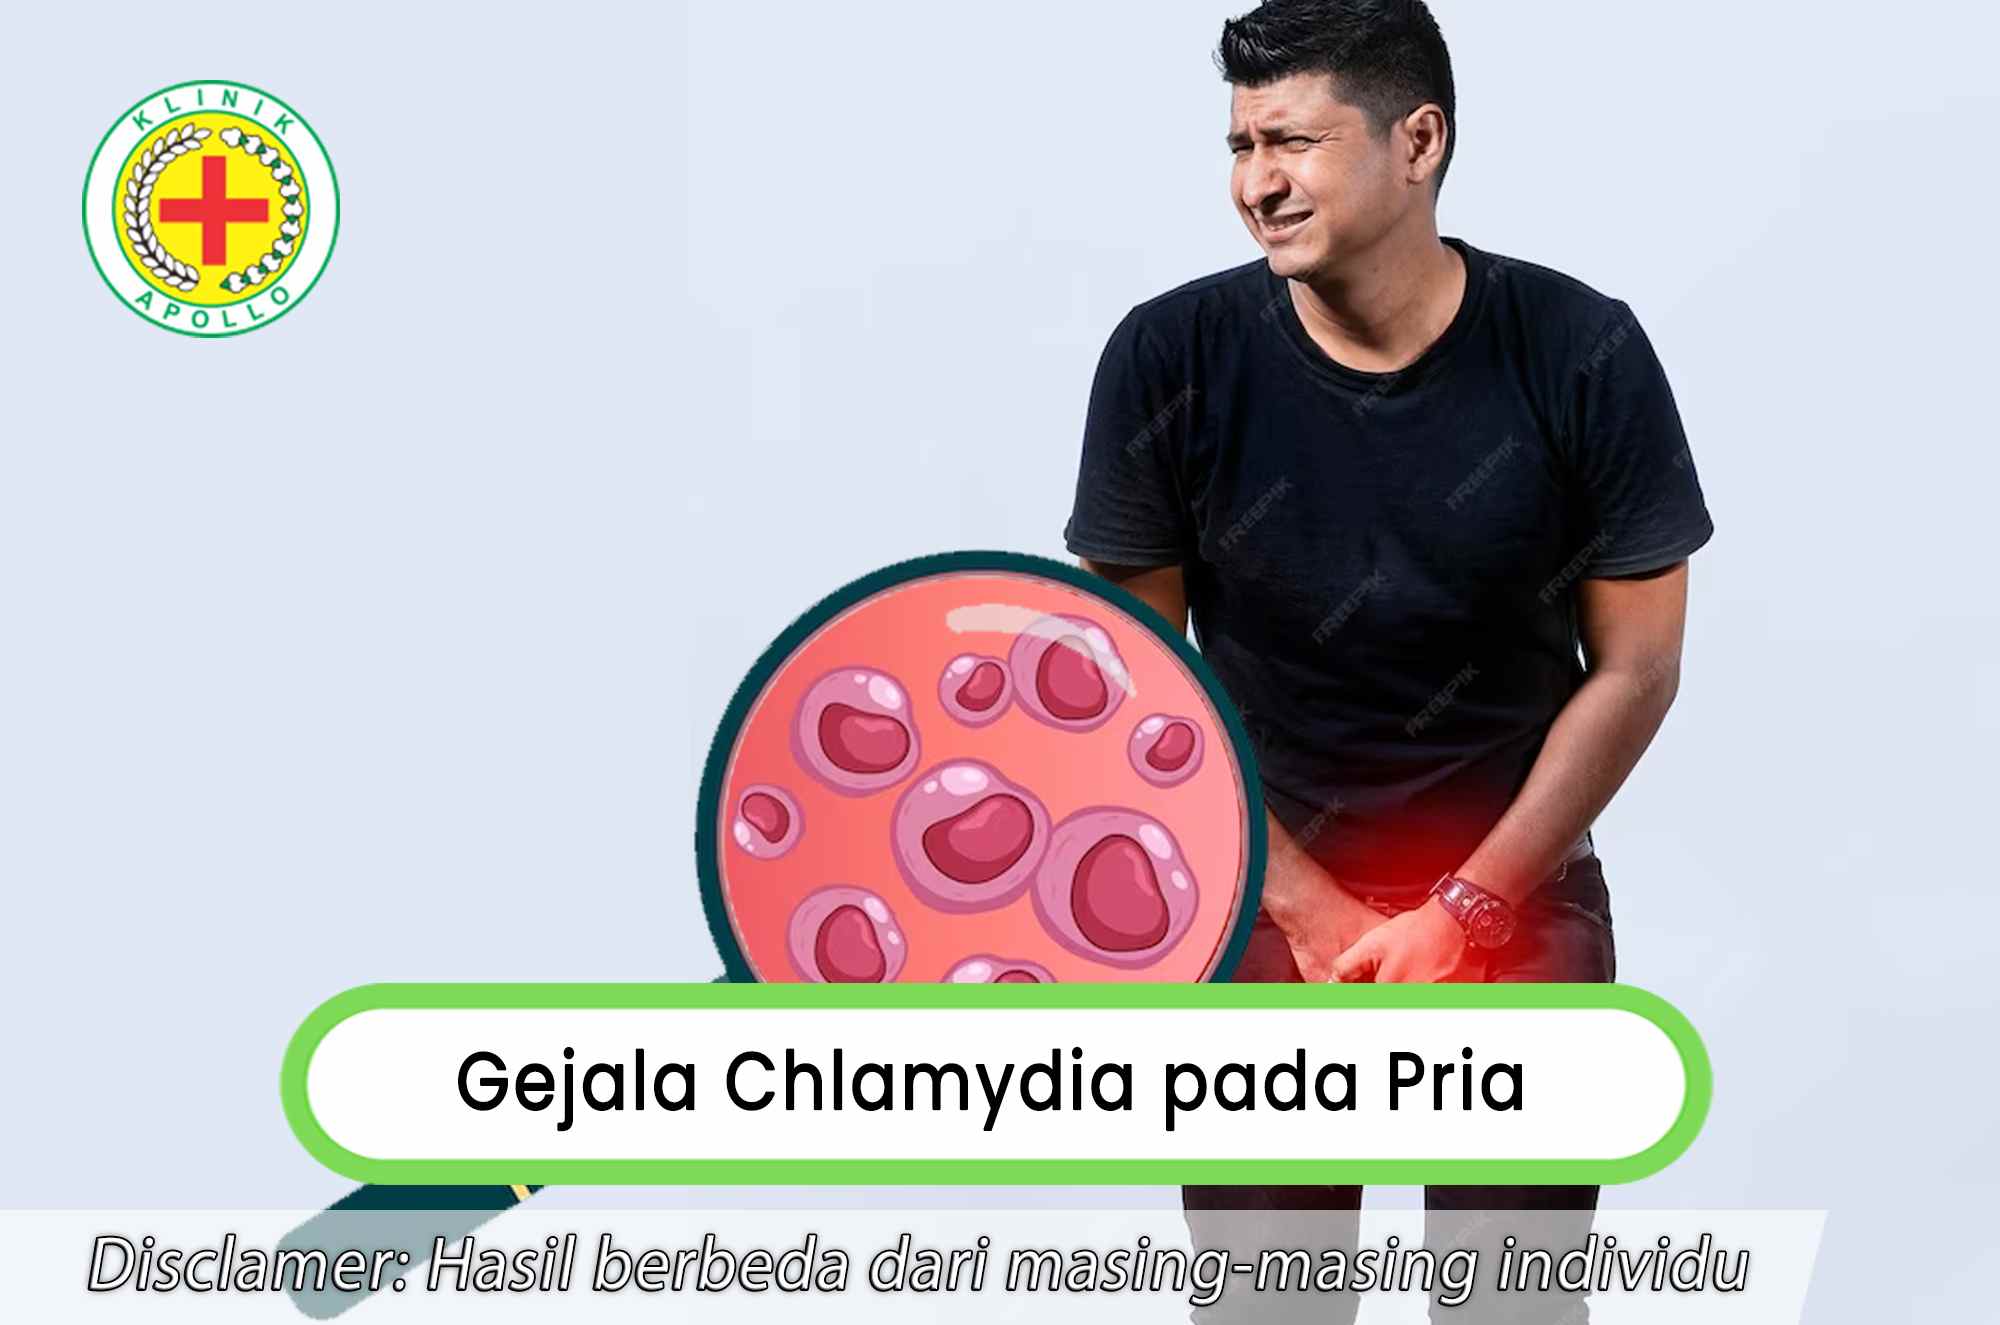 Mengenali gejala chlamydia pada pria dengan cara melakukan pemeriksaan medis.